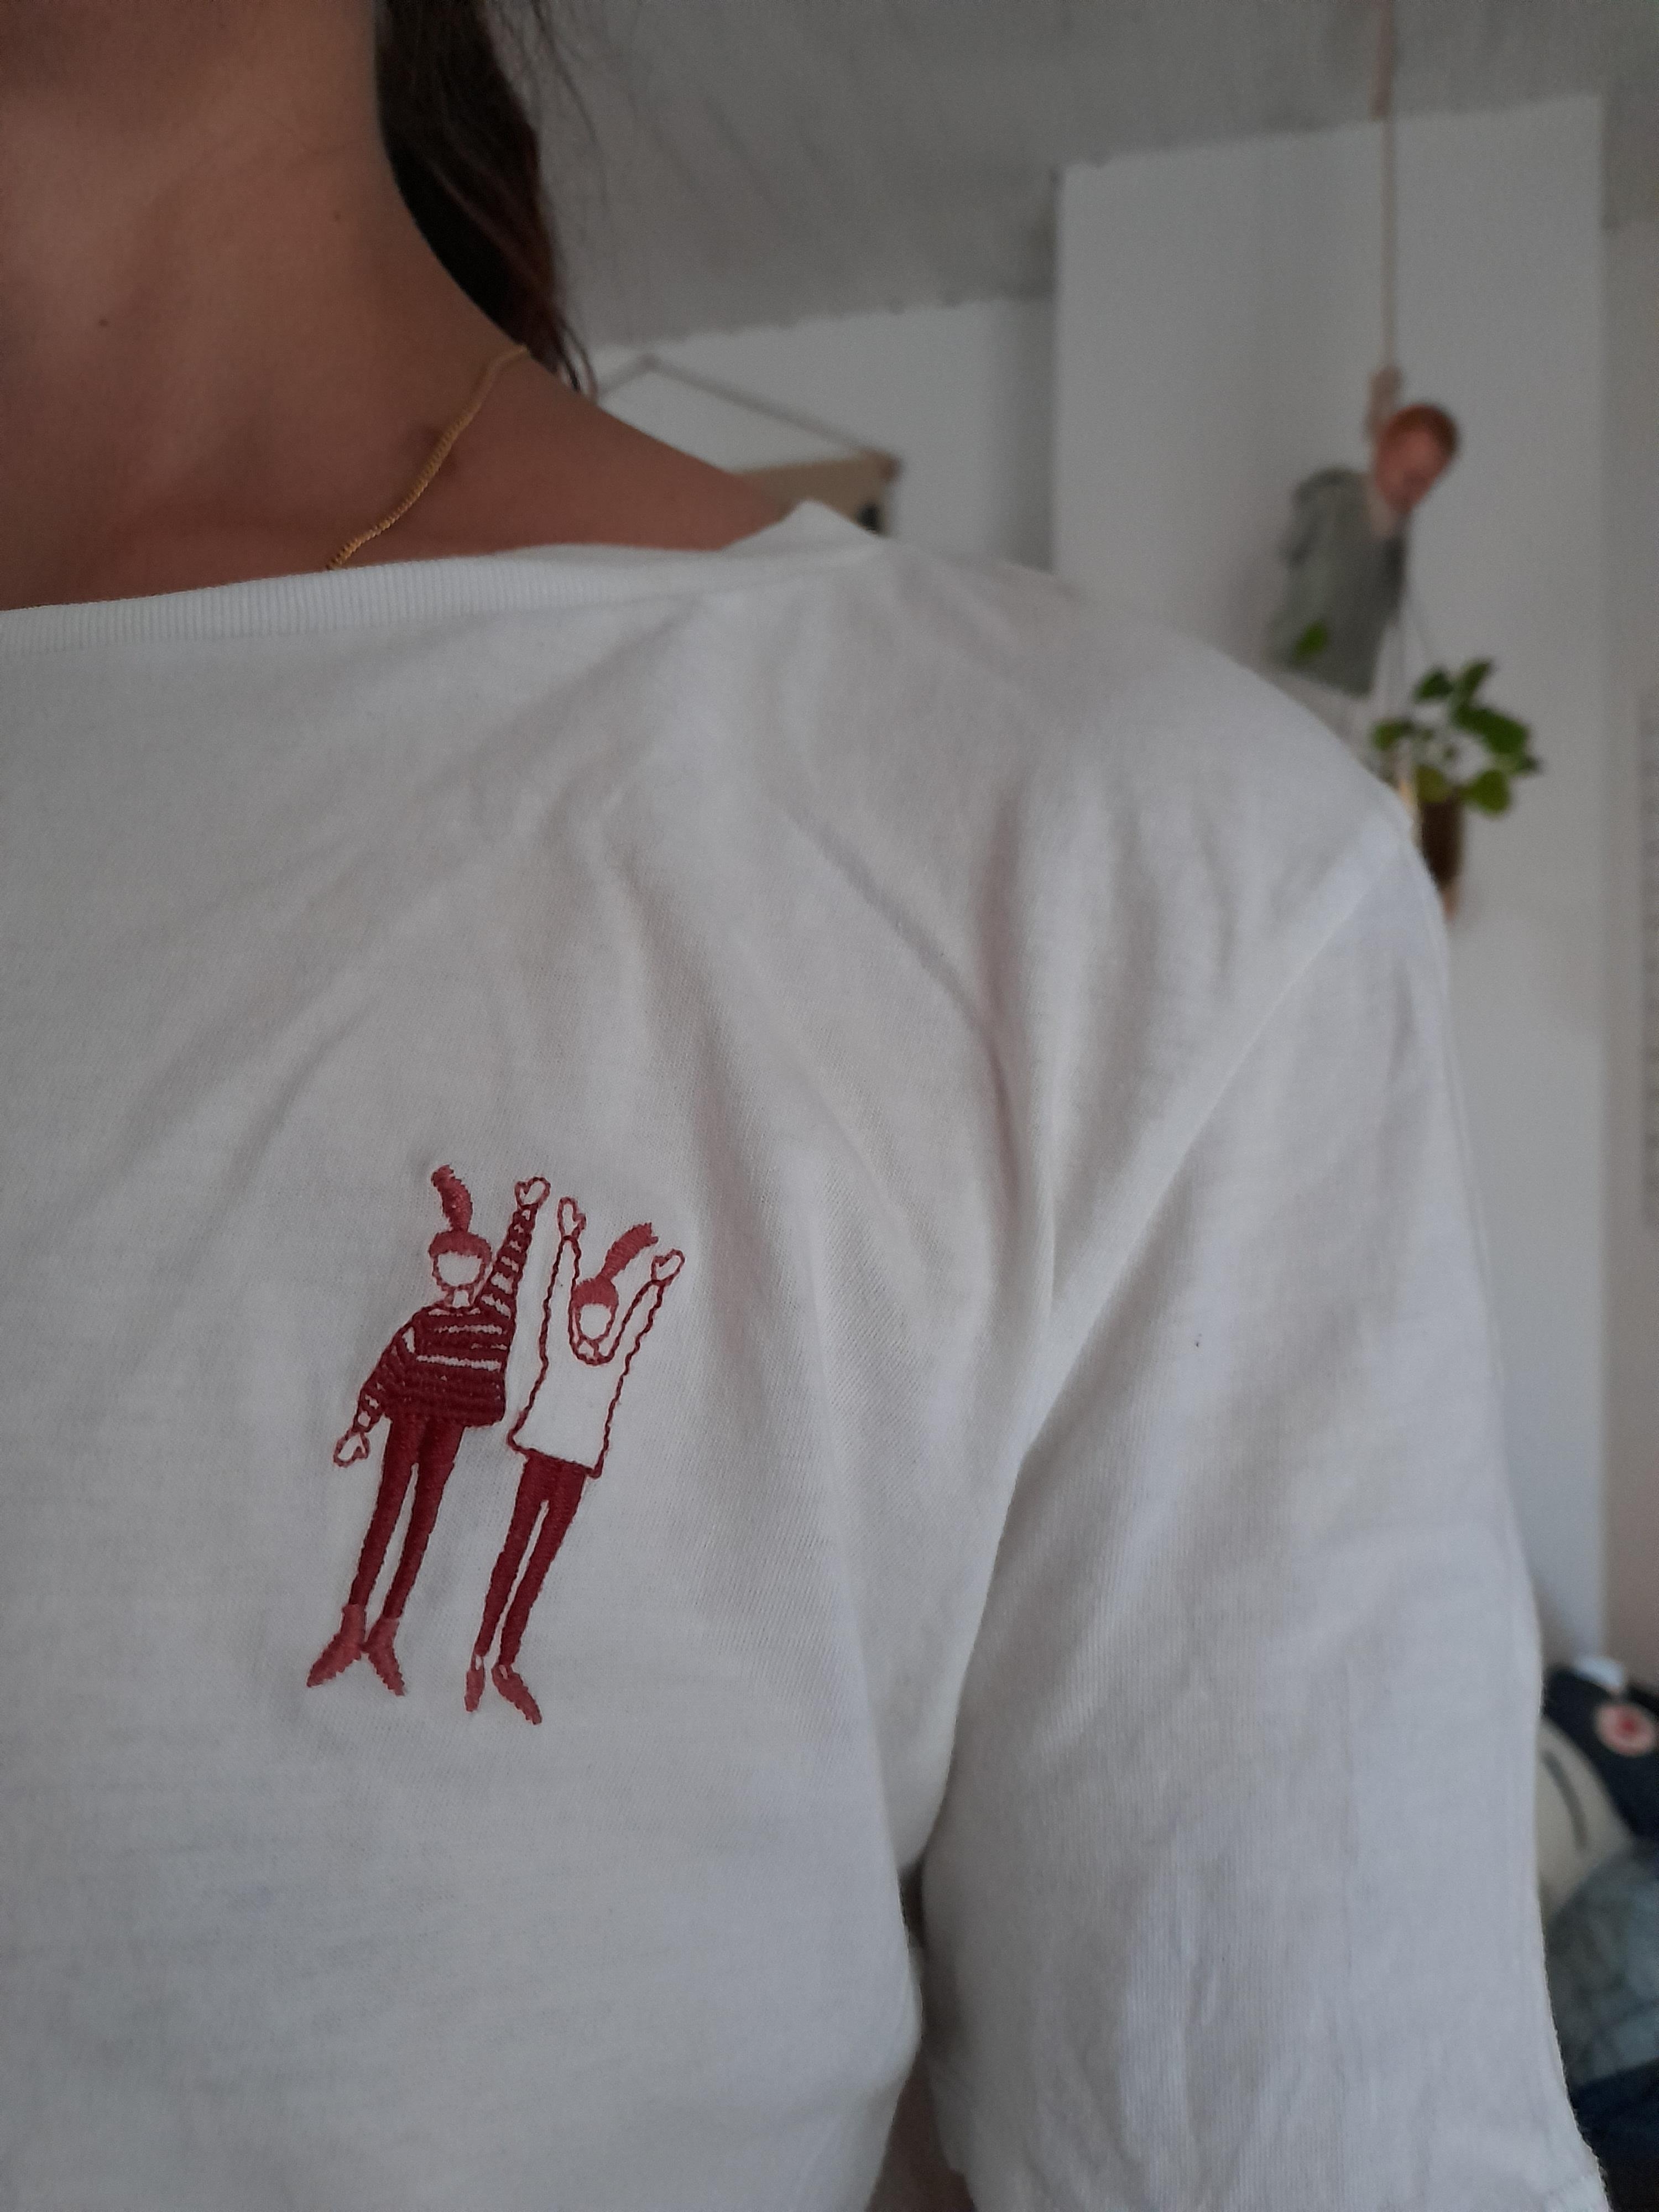 #lieblingslook #fashionbeautychallenge
Ich liebe shirts mit print 